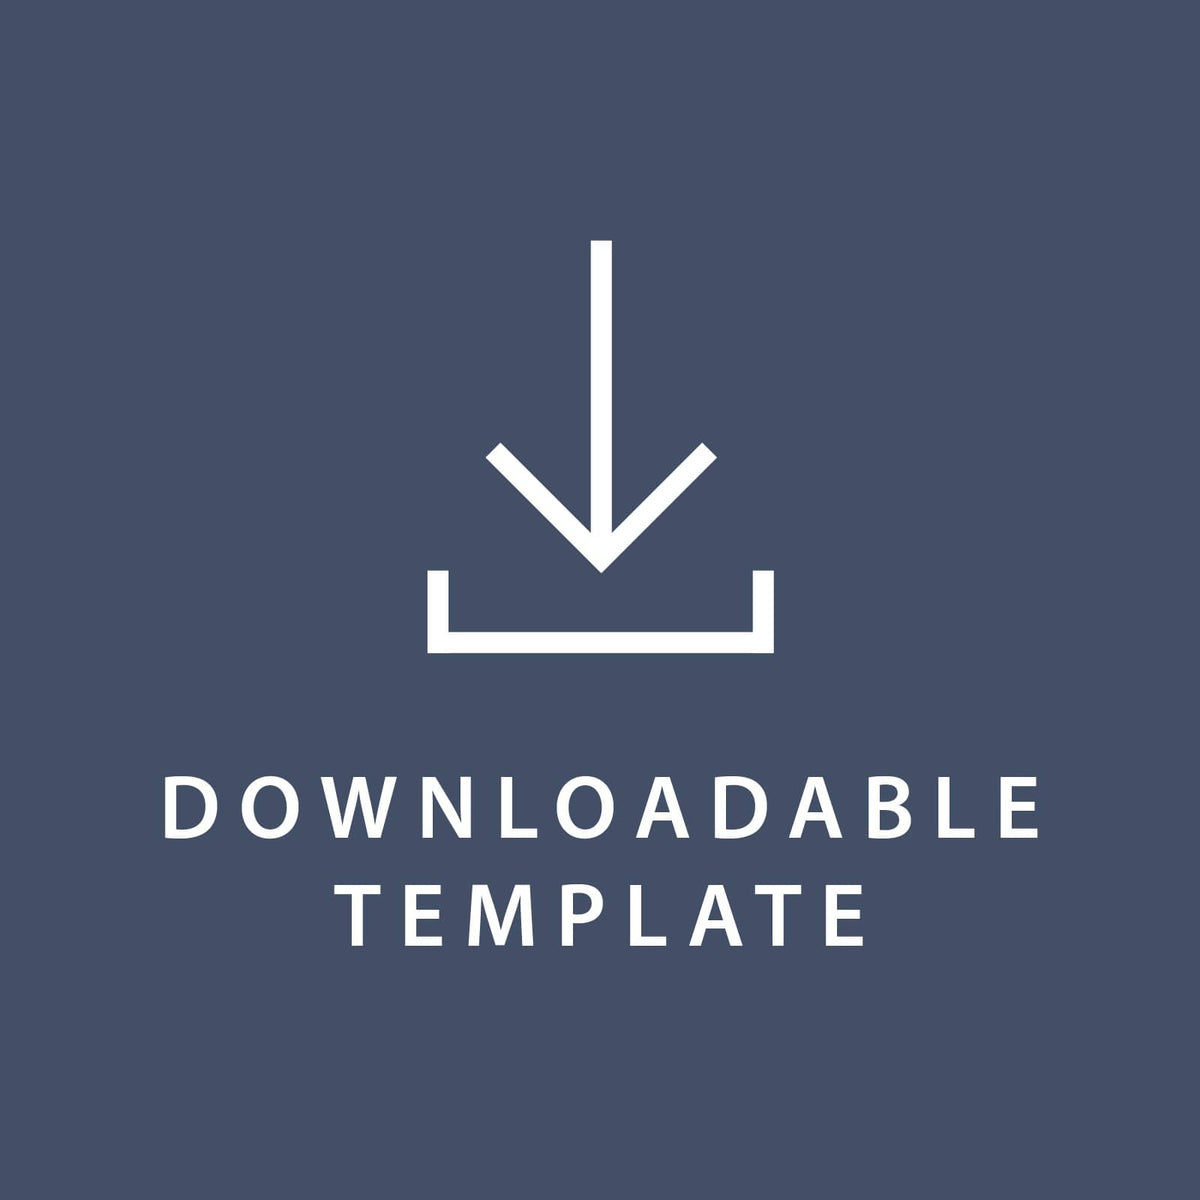 Template for 4.5 x 6.5 Invitations Gartner Studios Template tmplt0319